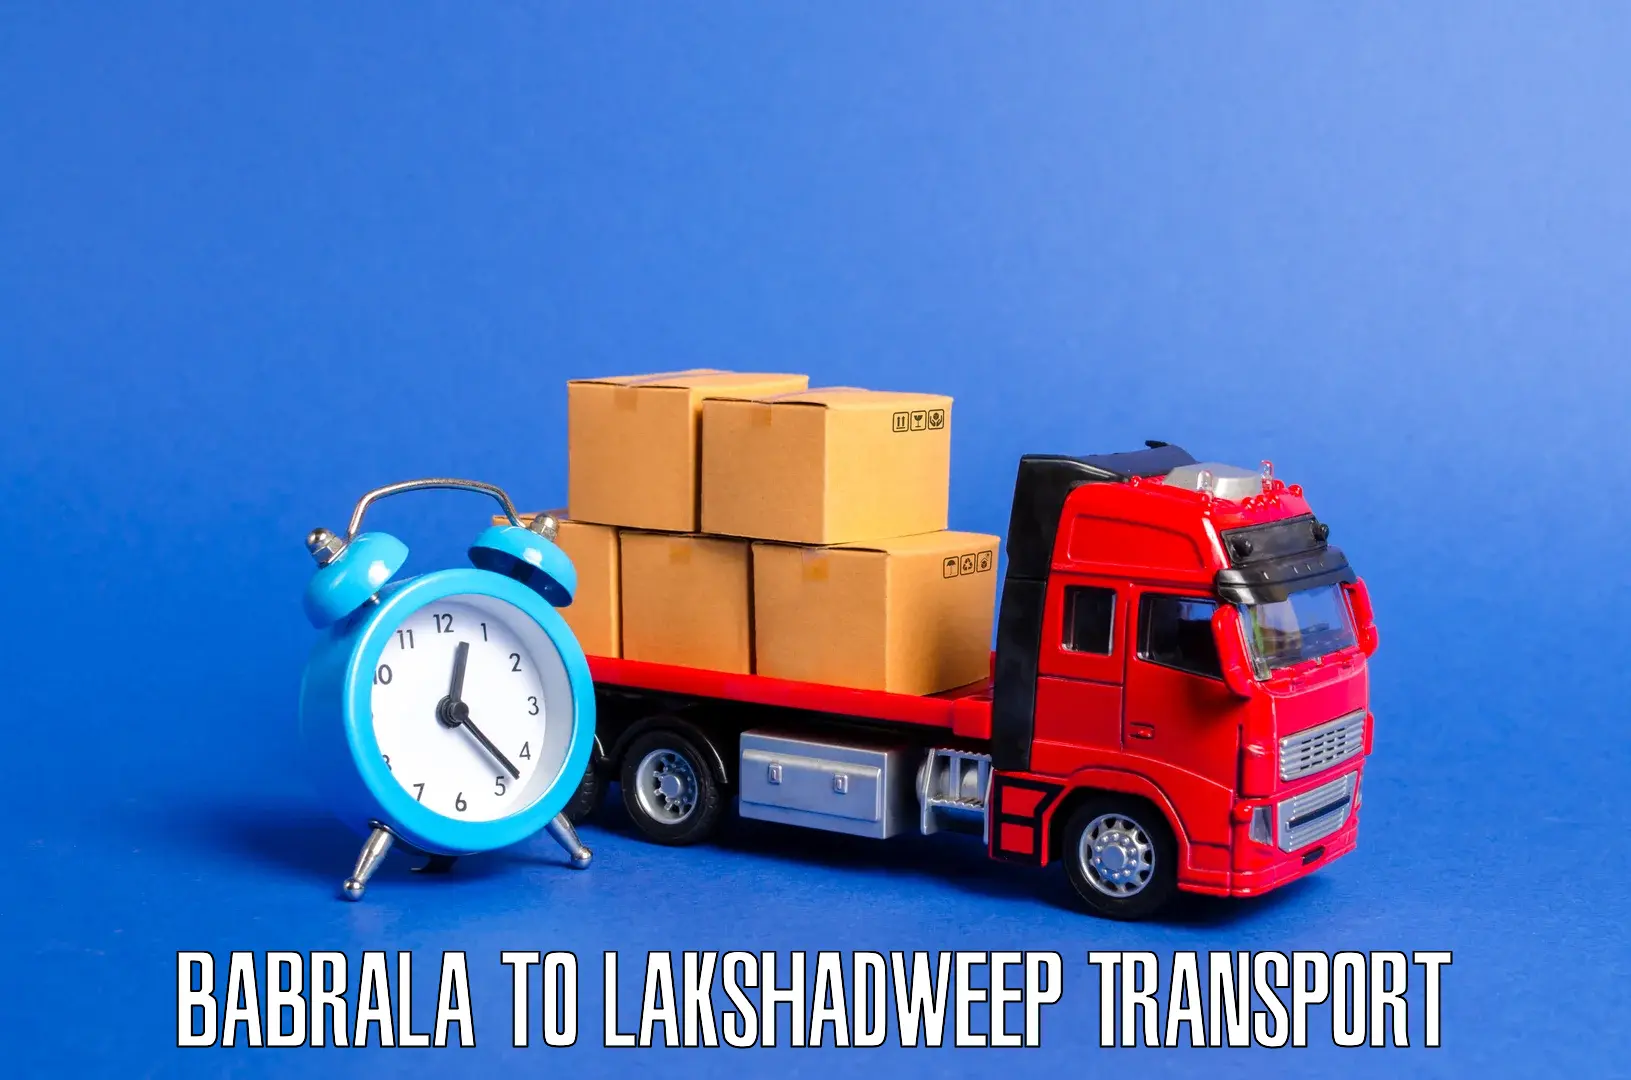 Bike transport service Babrala to Lakshadweep